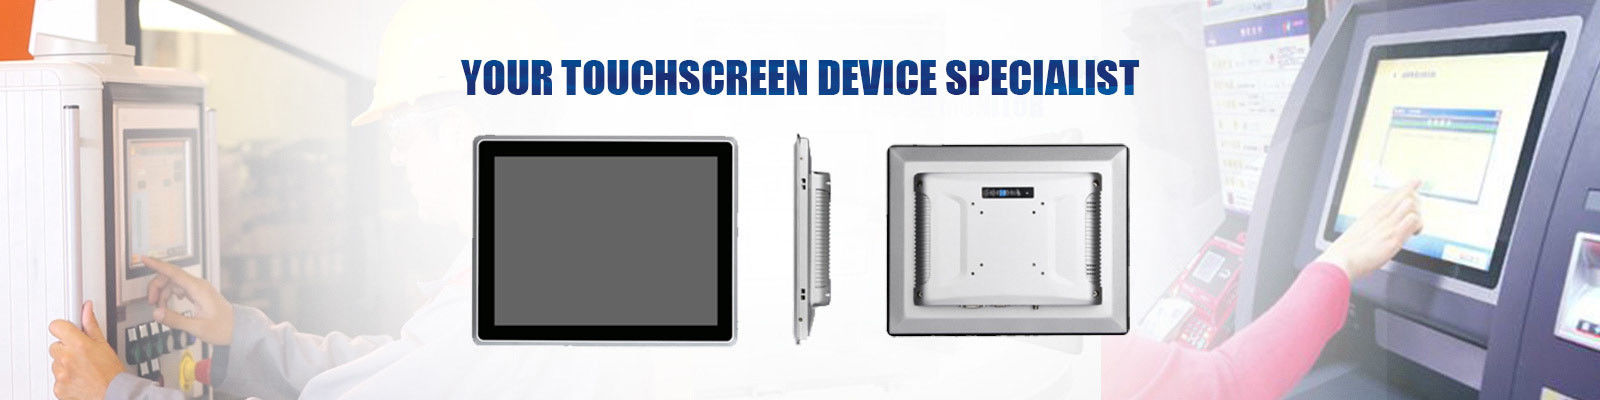 chất lượng Embedded Touch Panel PC nhà máy sản xuất